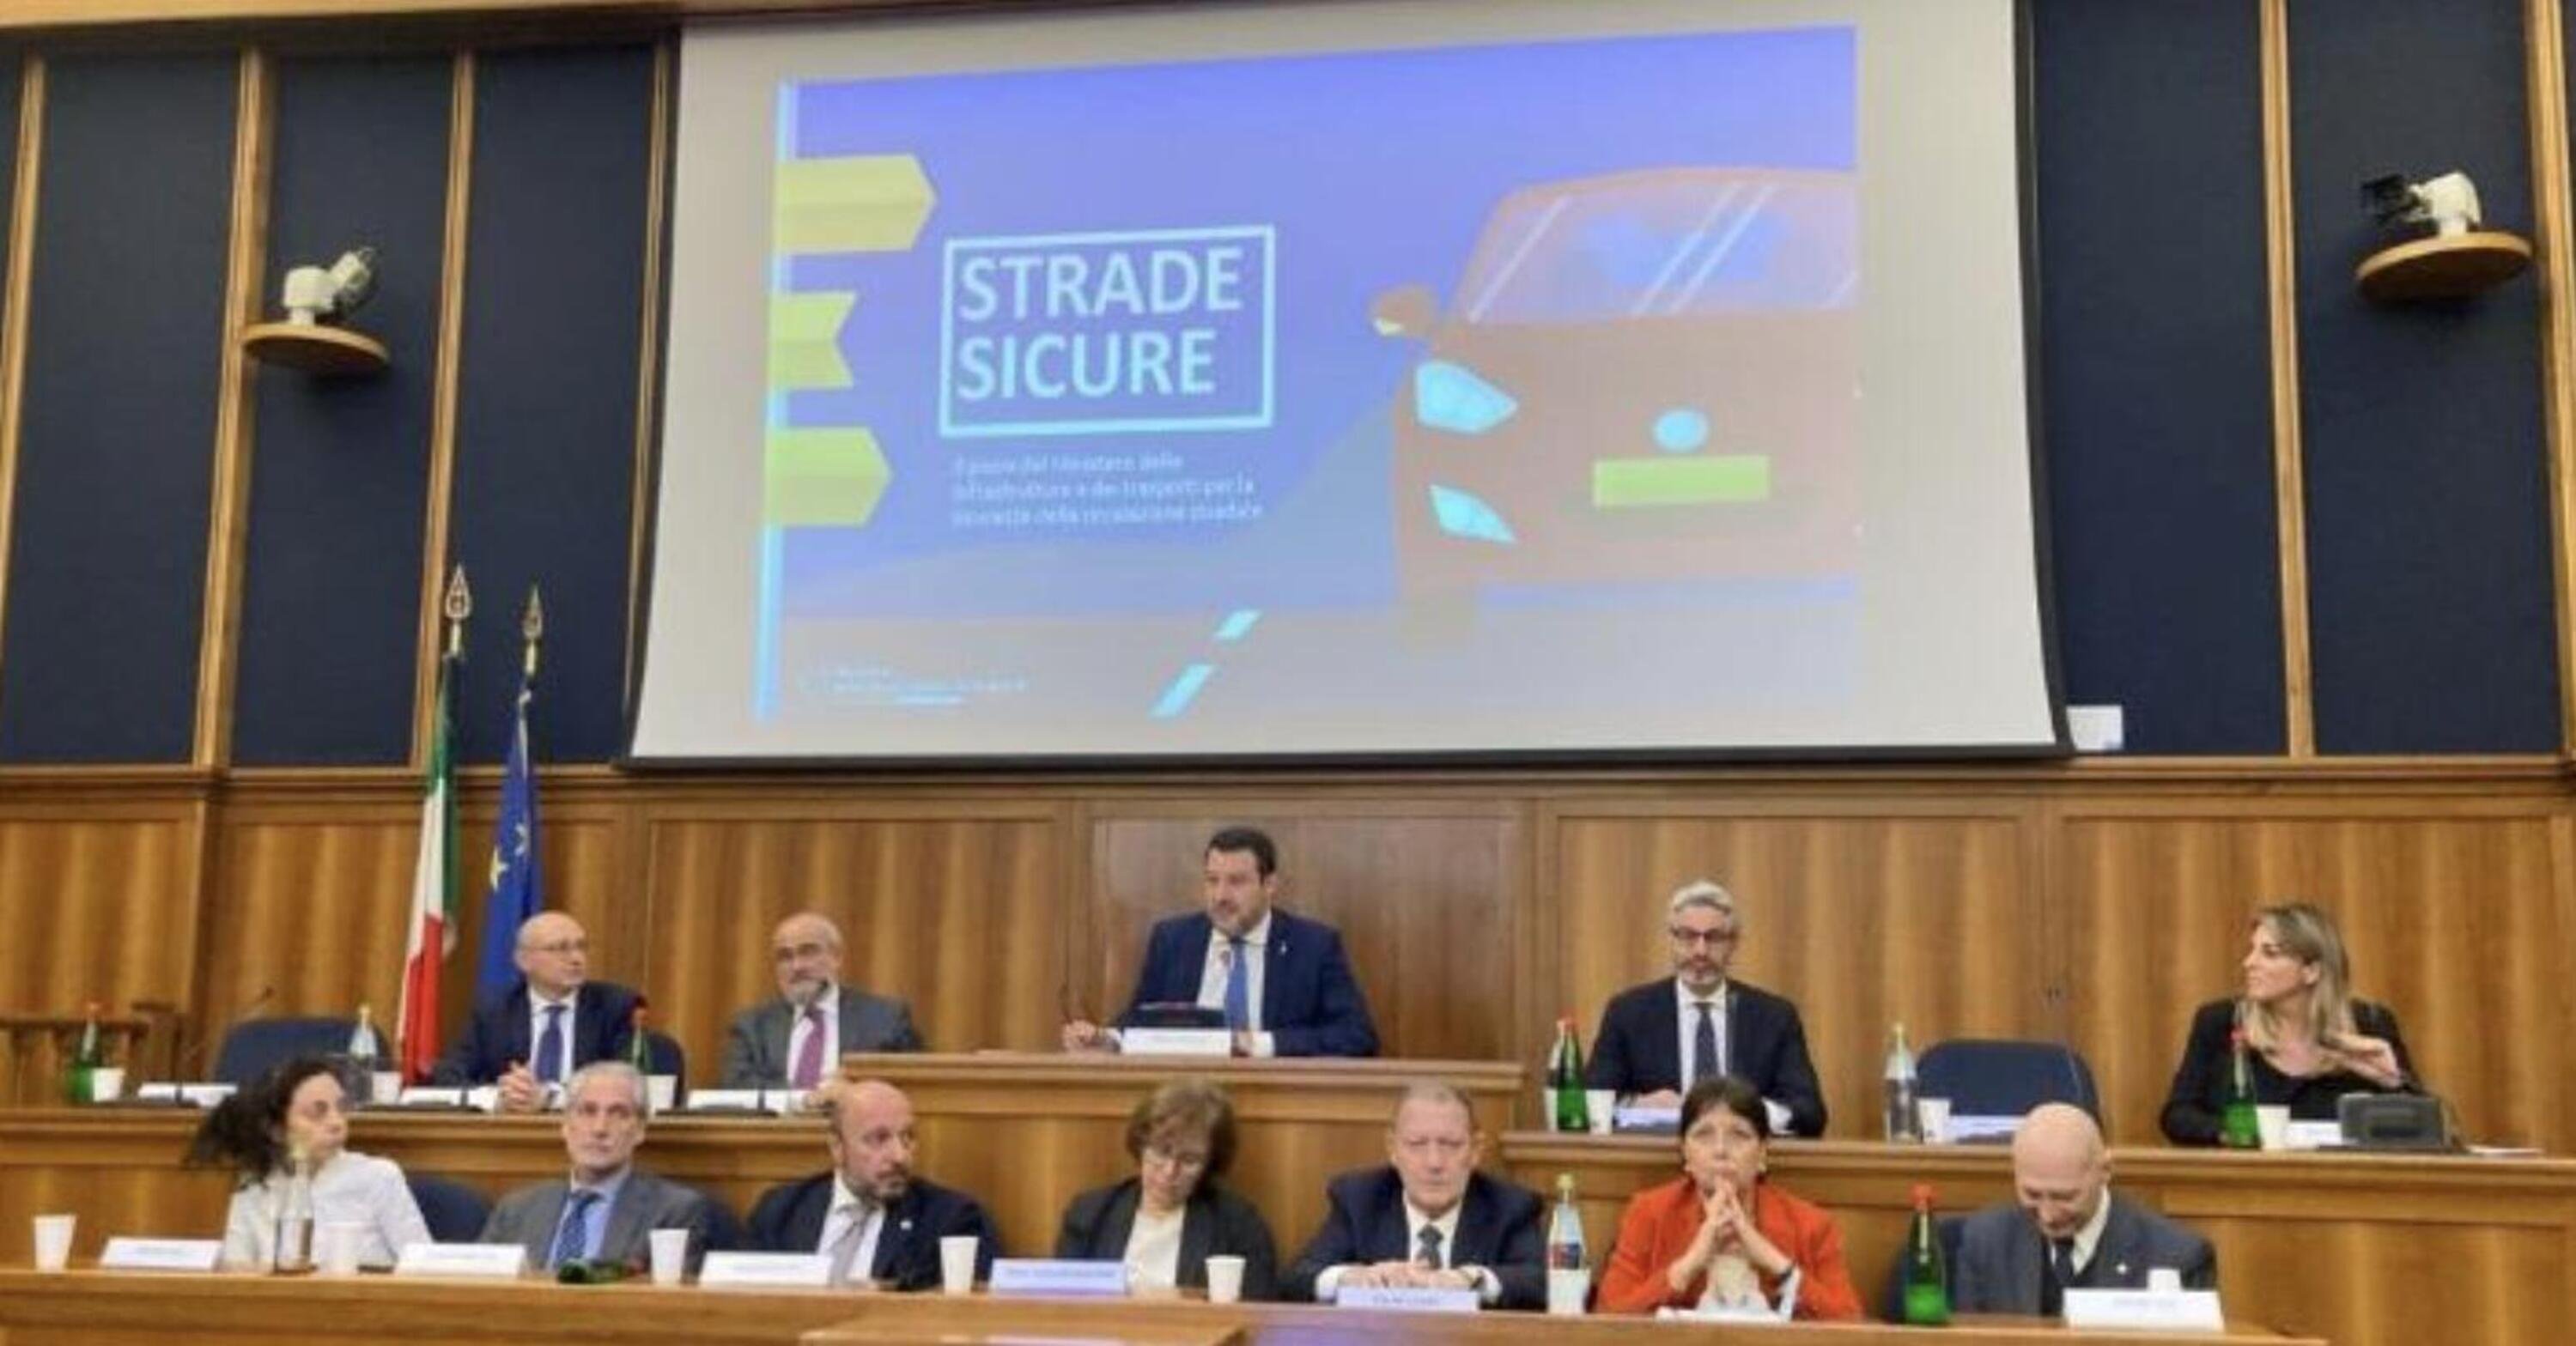 Sicurezza stradale: il Presidente Copioli chiede al Ministro Salvini la tutela dei motociclisti vulnerabili